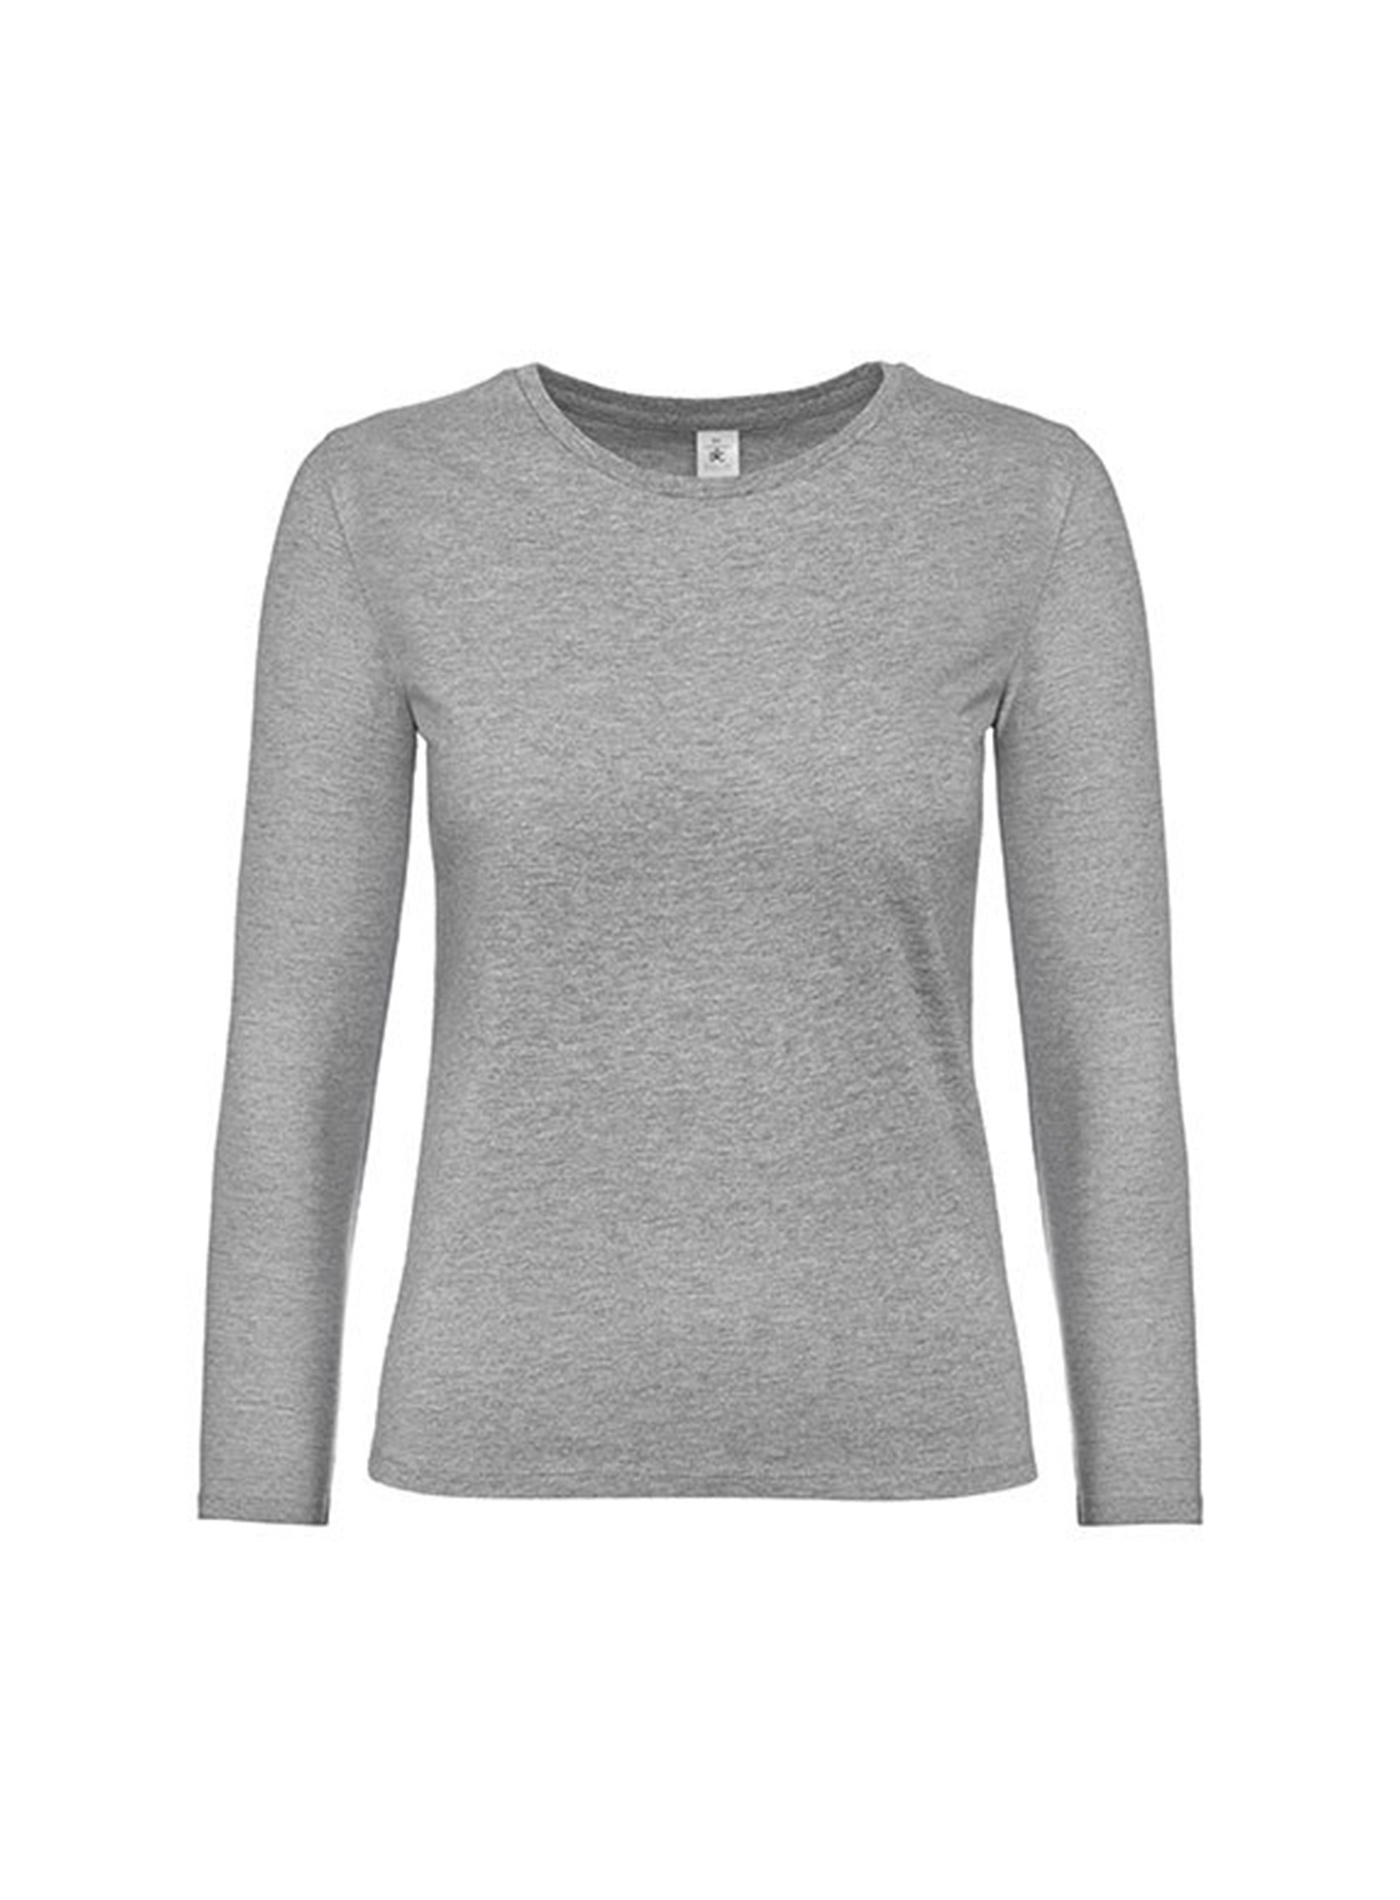 Dámské tričko s dlouhým rukávem B&C Collection - Světle šedý melír L